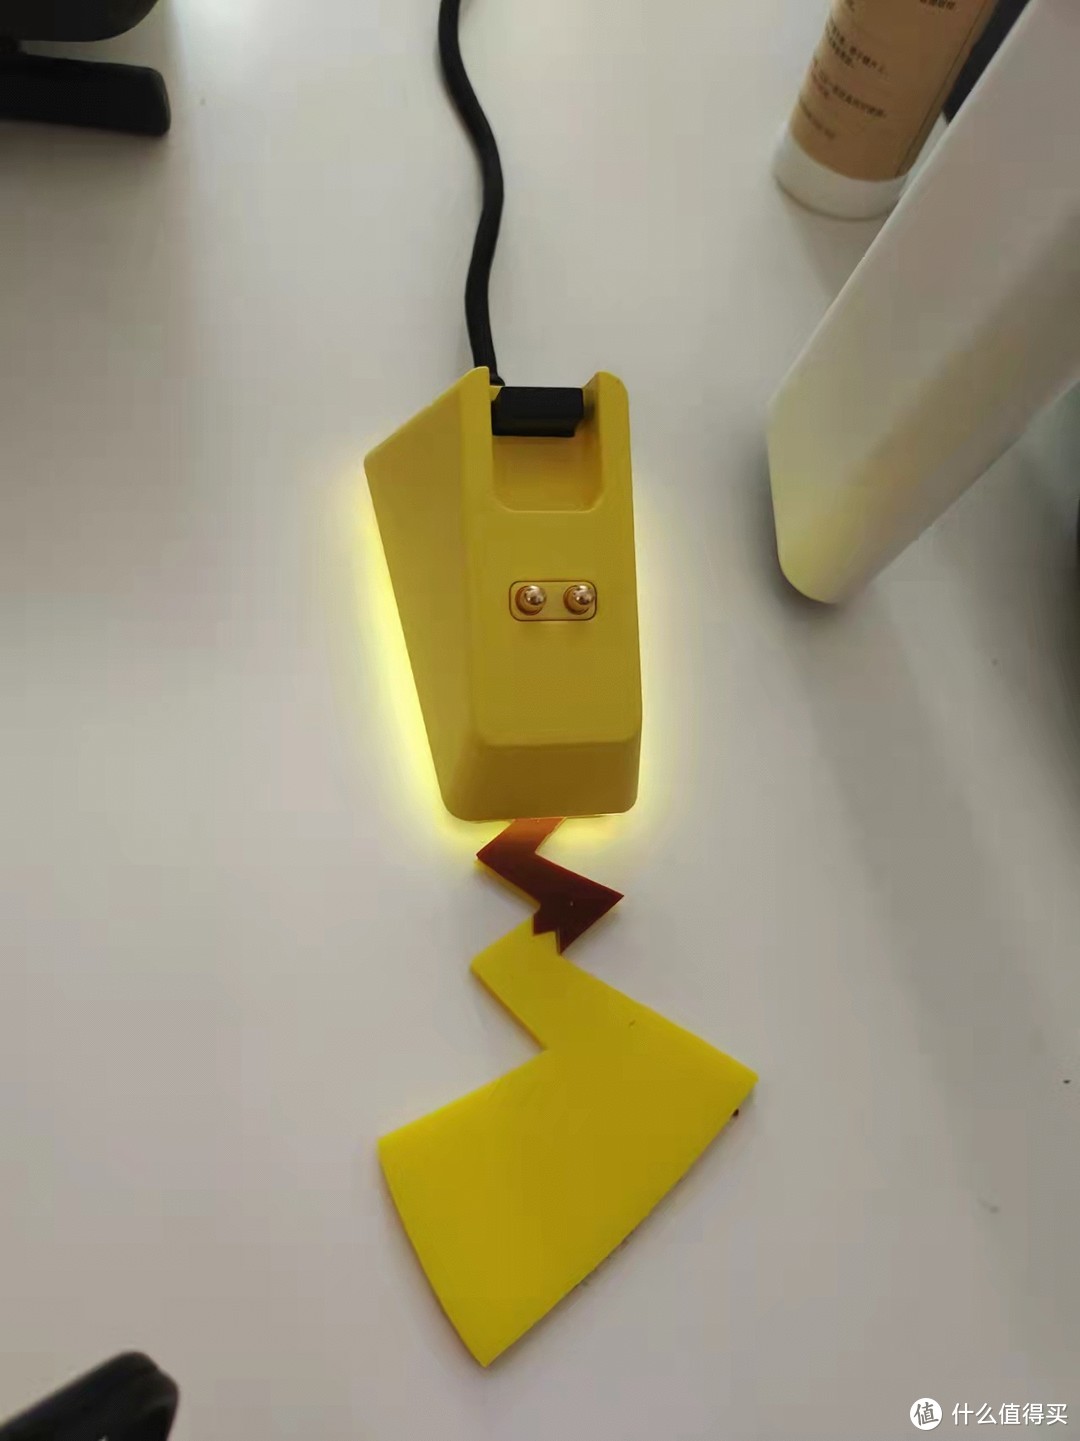 底座和鼠标的精灵球标志可以发光，支持RGB，充电有磁吸，放上不怕掉下去